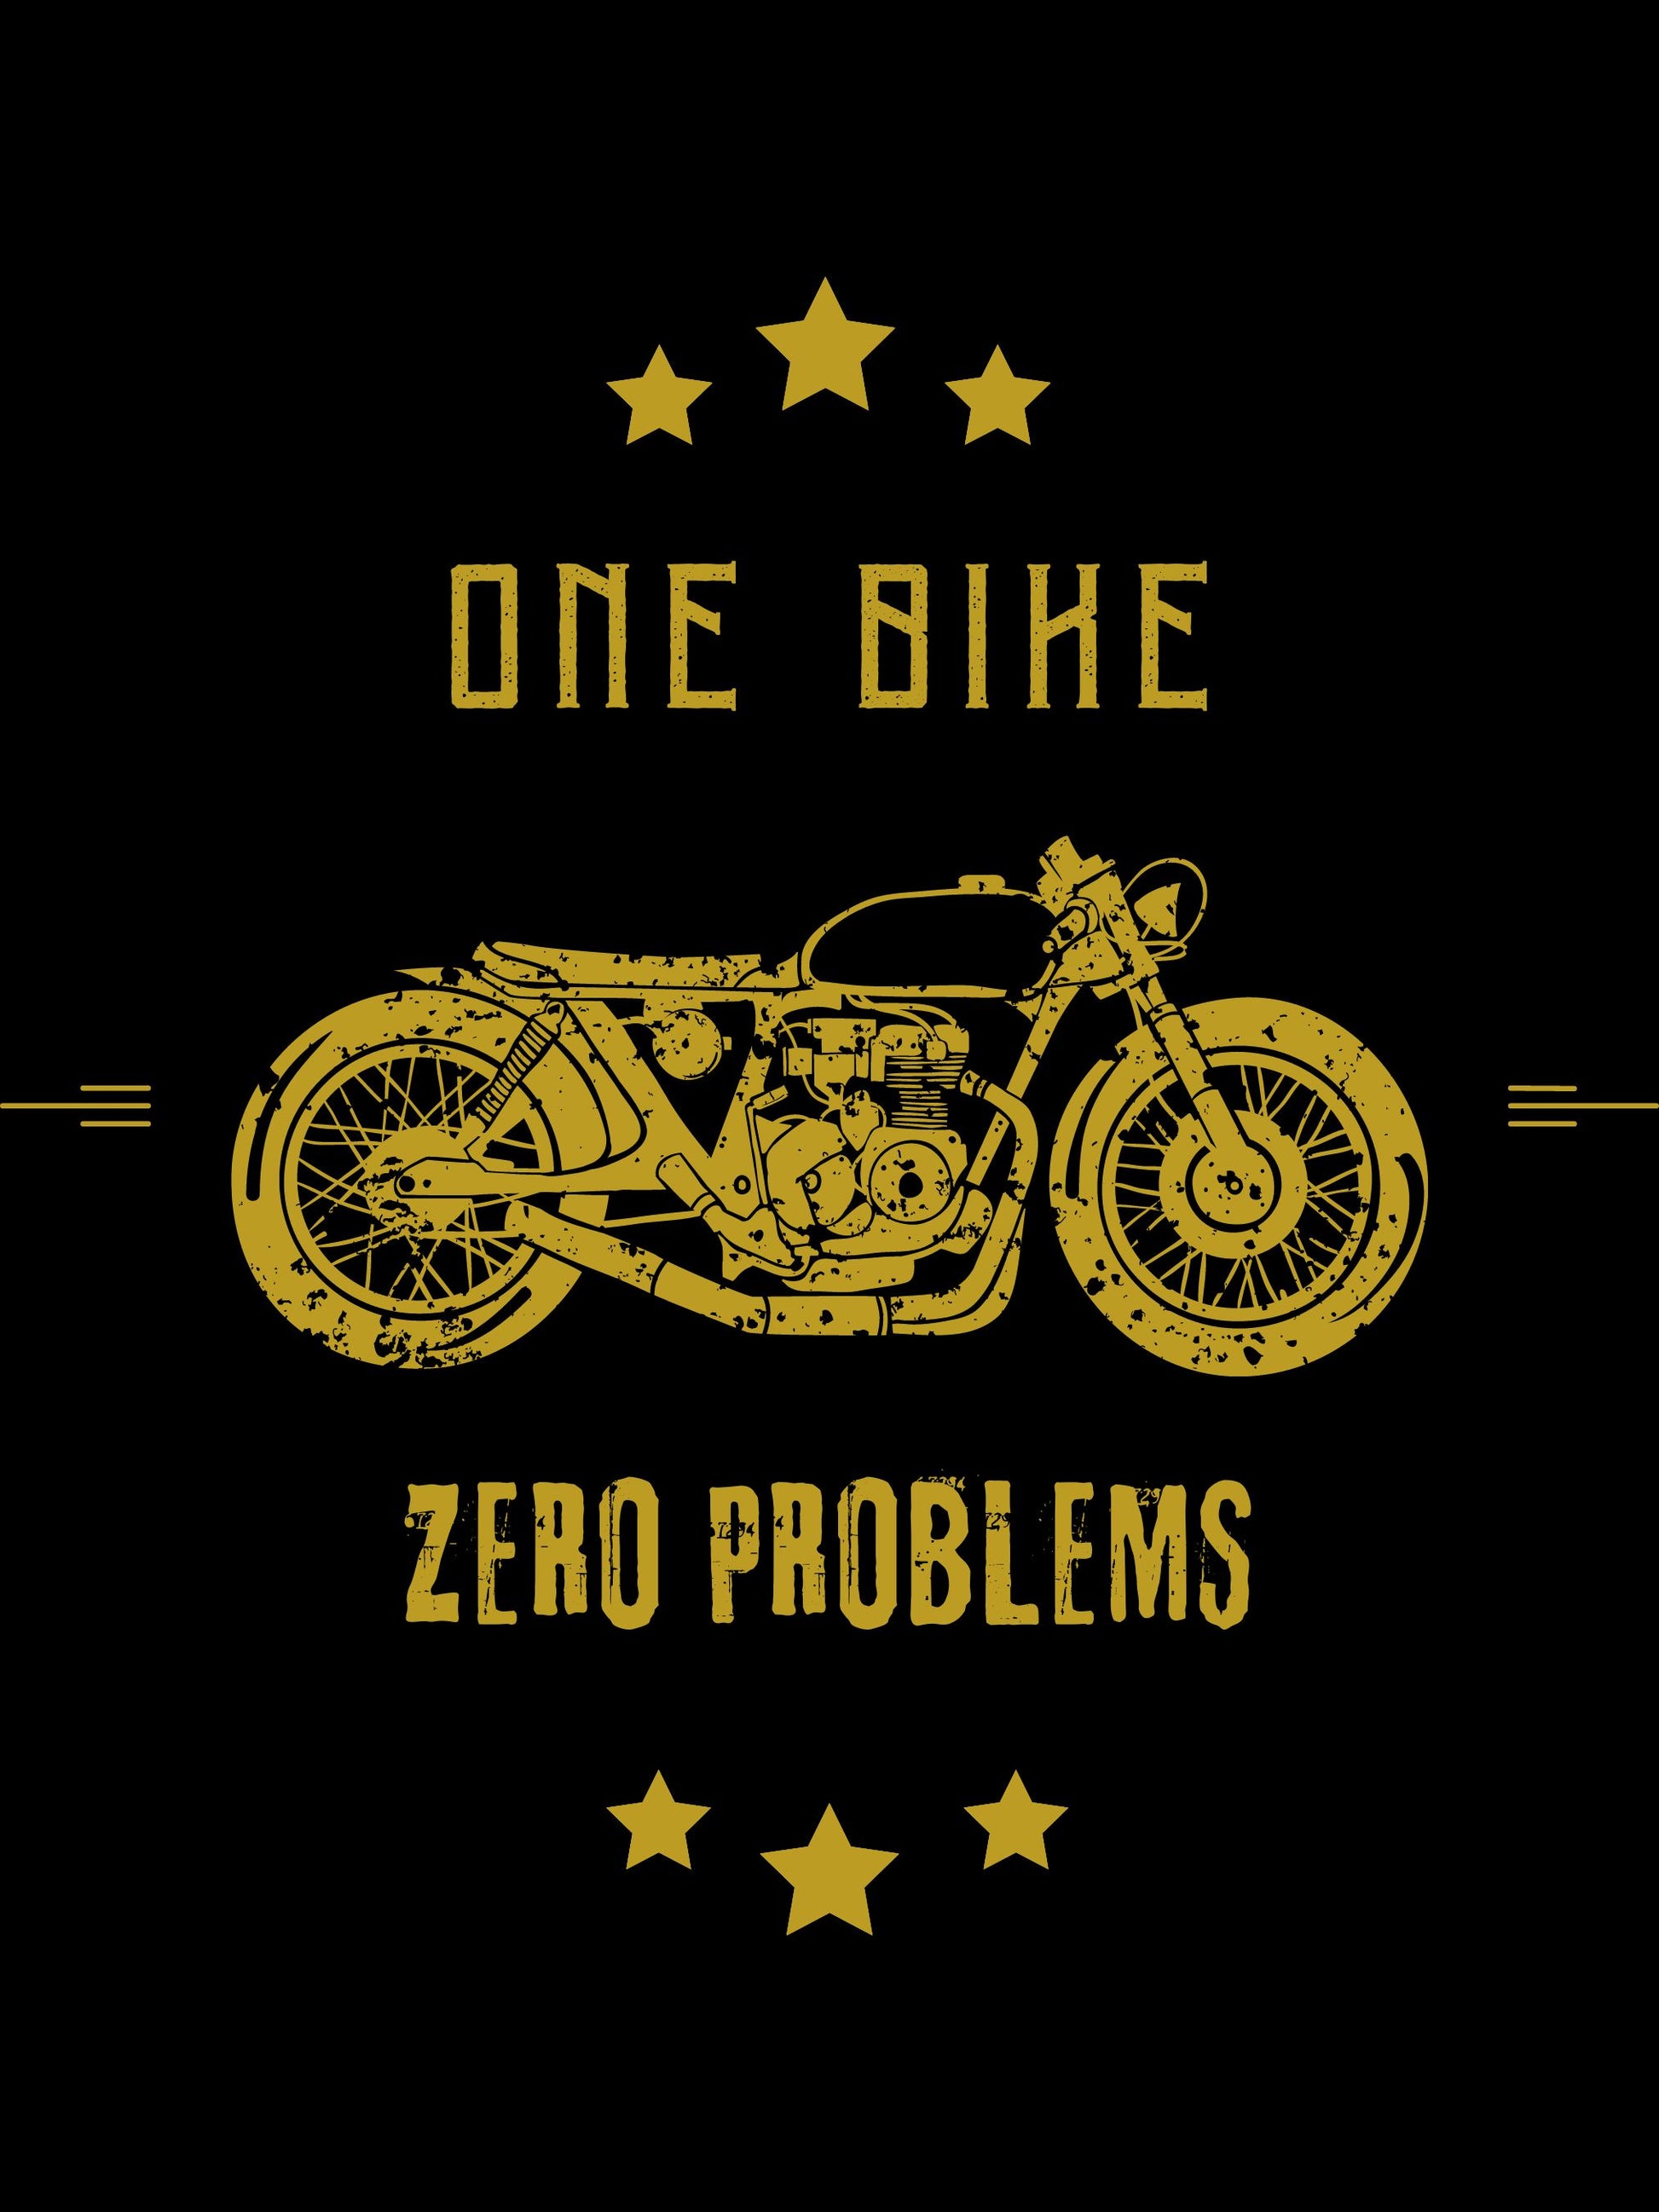 Motorcycle T-shirt Bikesaint One bike Zero problems black art